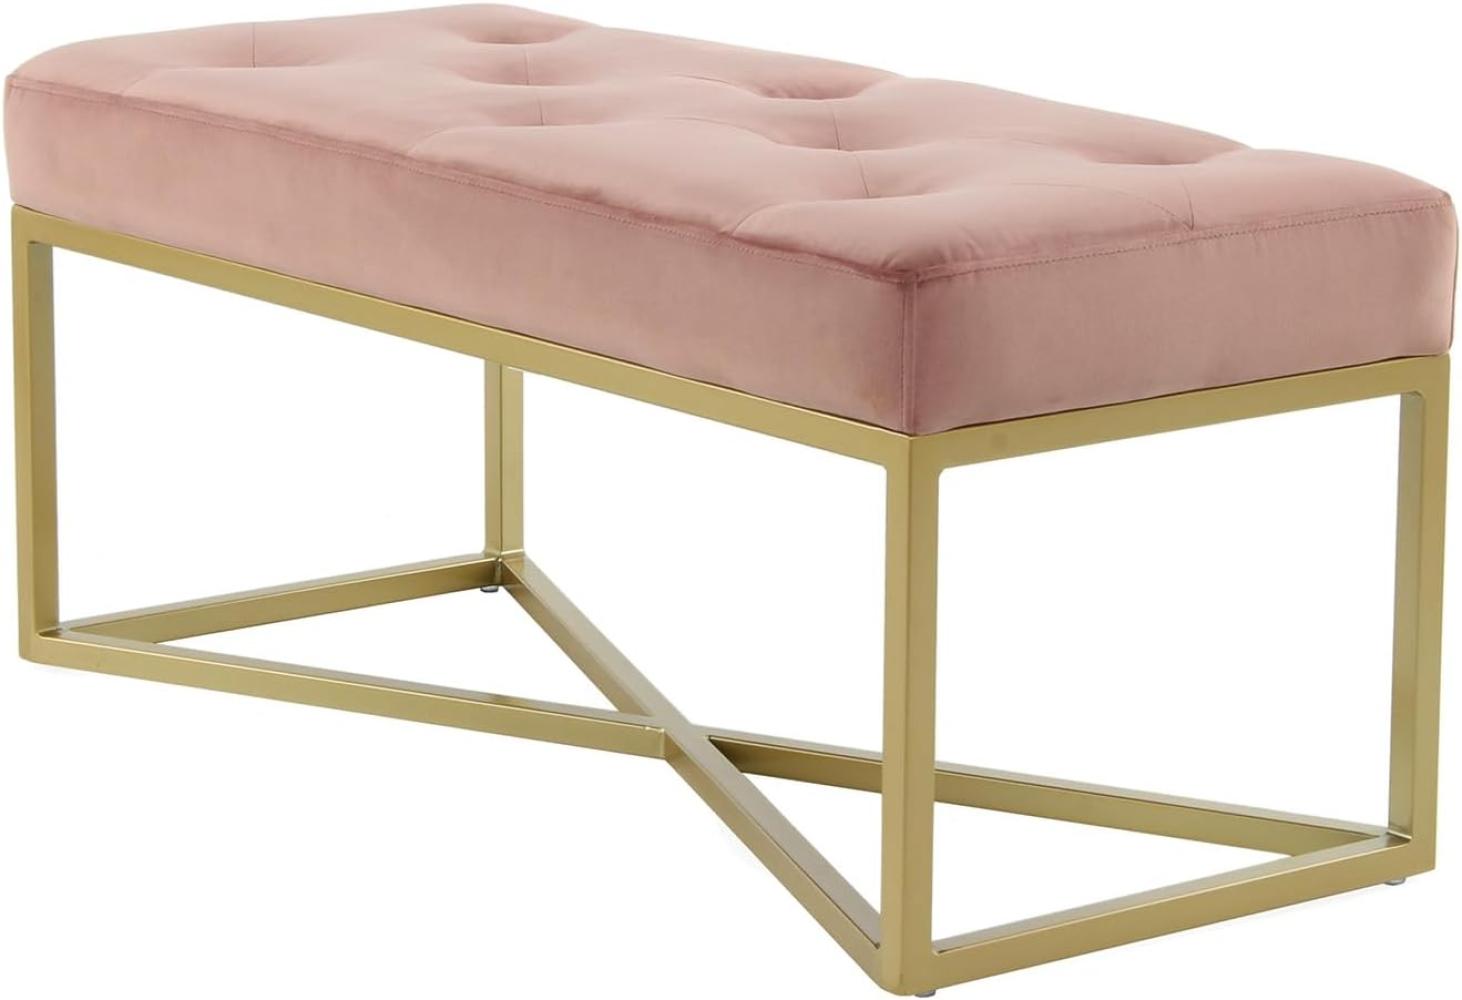 Qiyano Sitzbank Samt Gesteppte Polsterbank Bettbank für Schlafzimmer Wohnzimmer Flur Ankleidezimmer im Barock-Stil mit goldenen Metallfüßen, Farbe: Rosa Bild 1